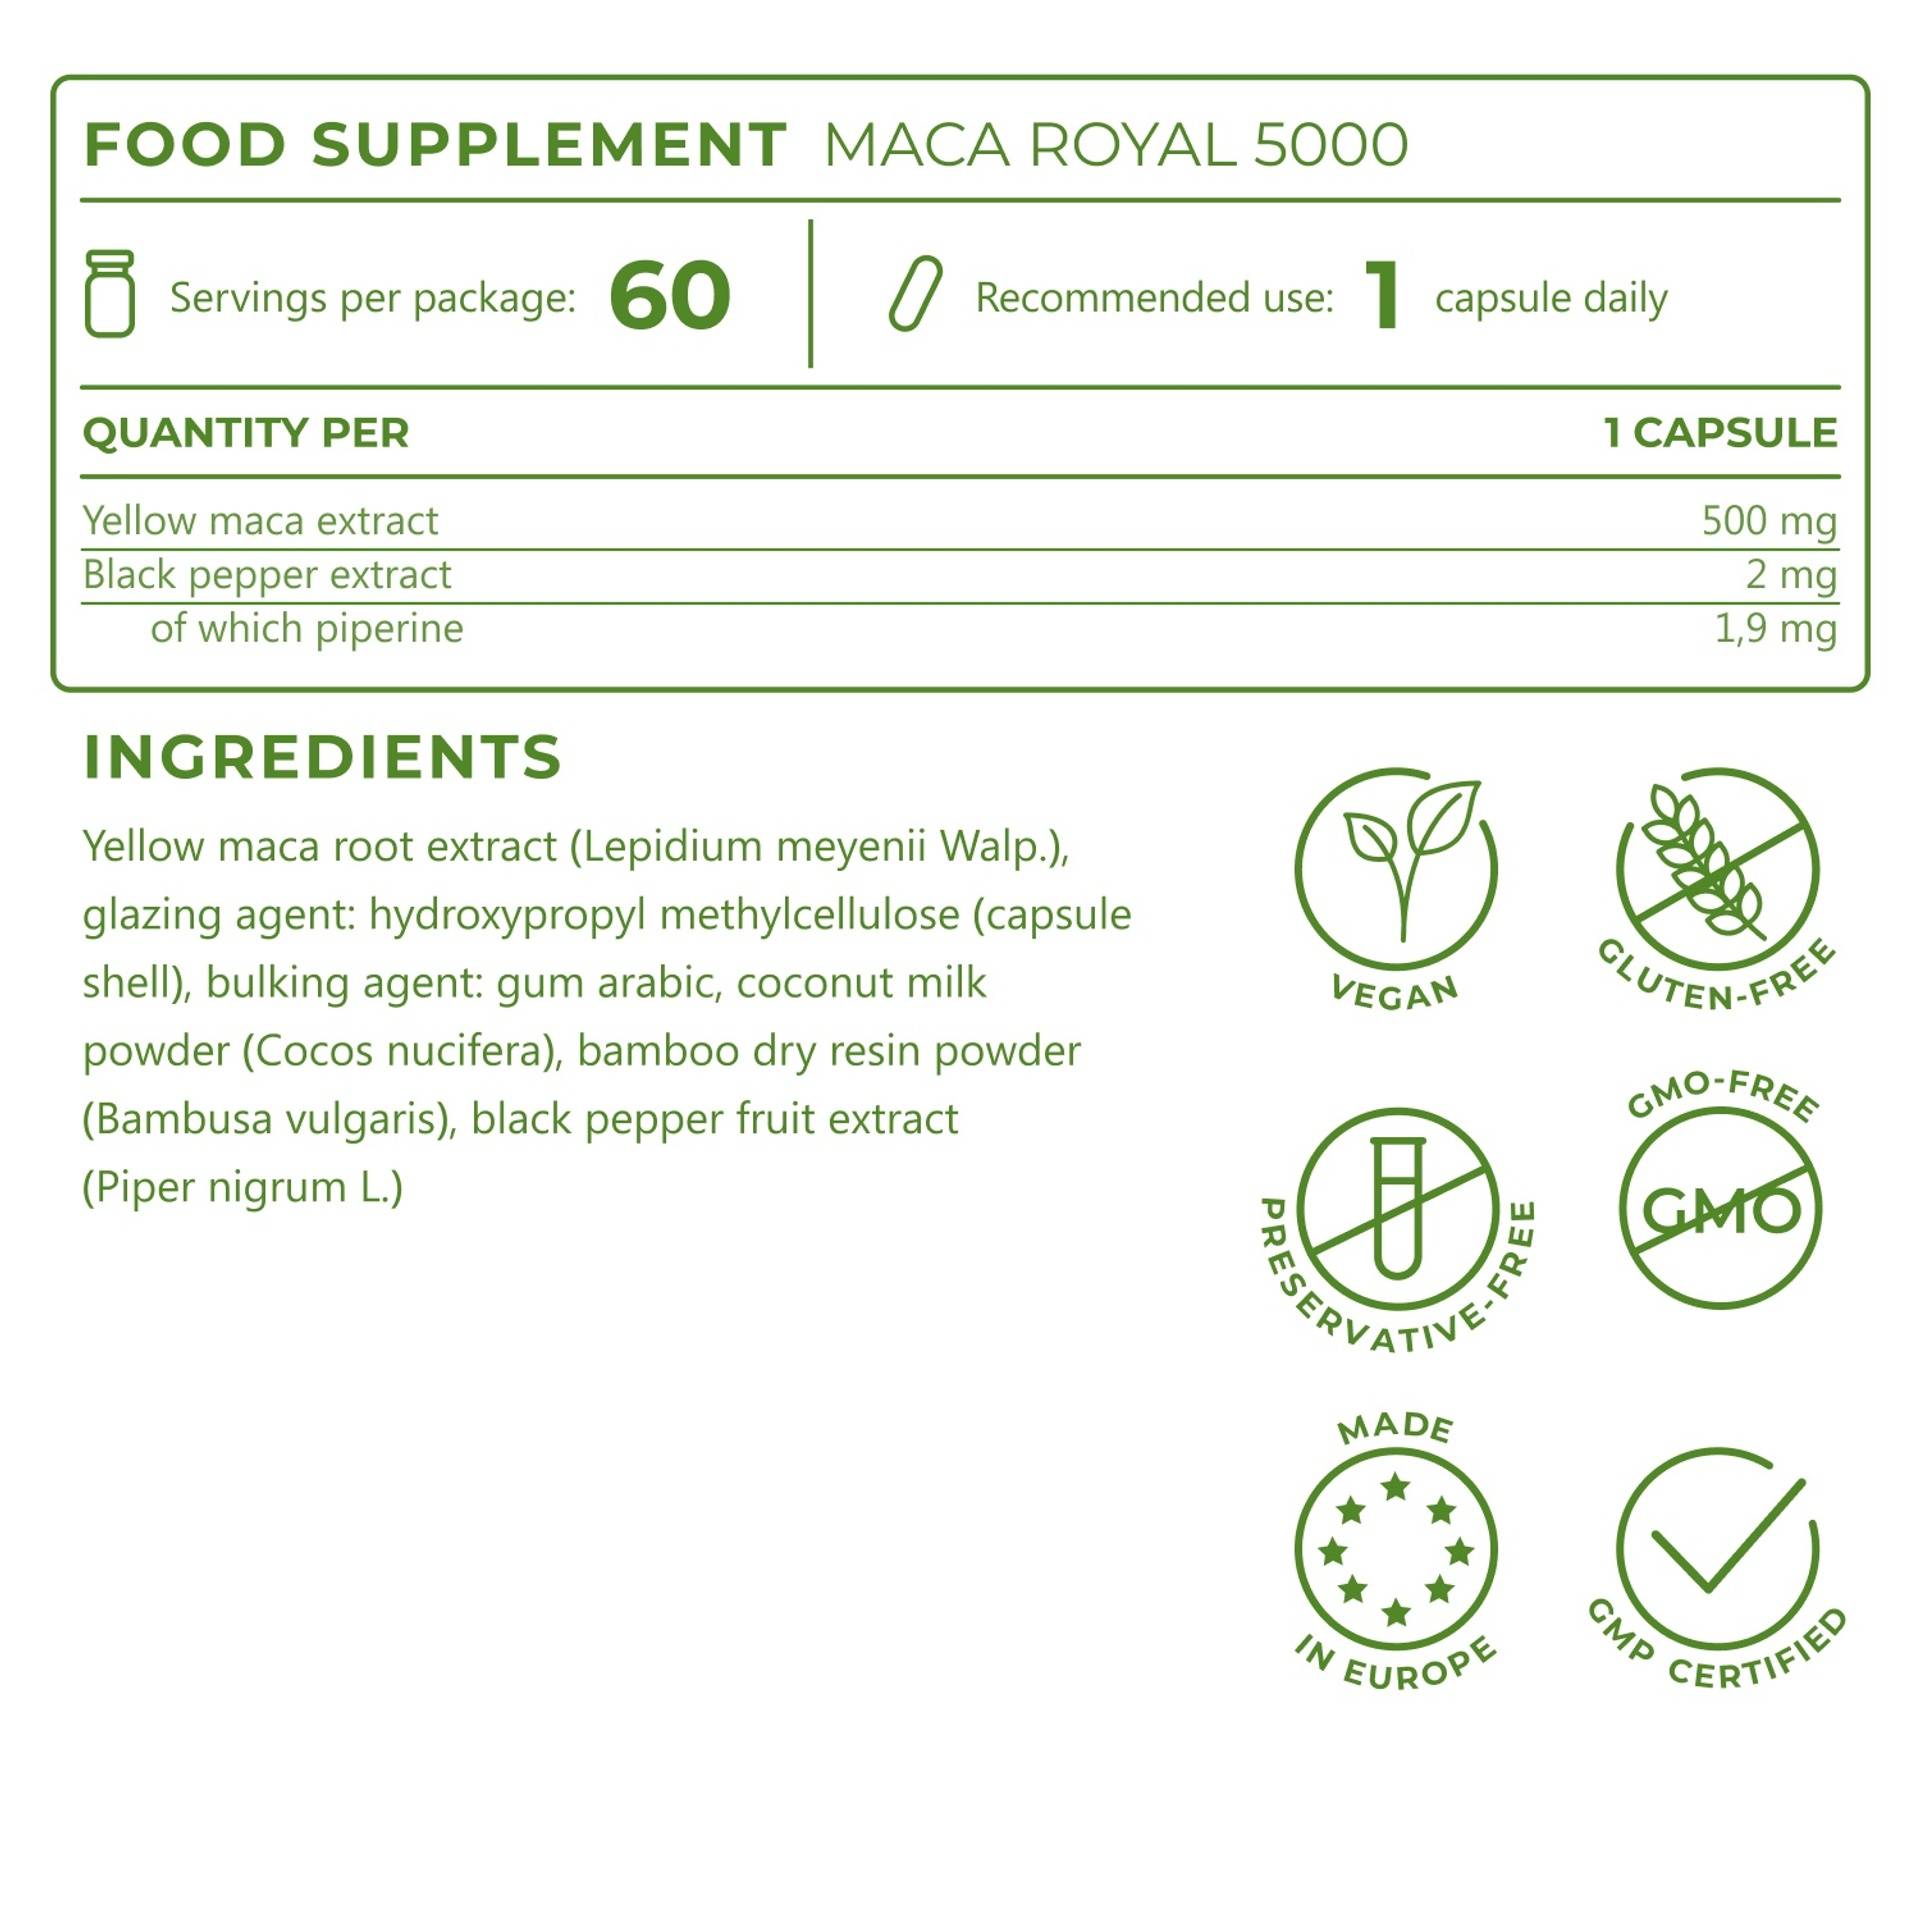 5_EN_Ingredients_Maca-Royal-5000_4847.png